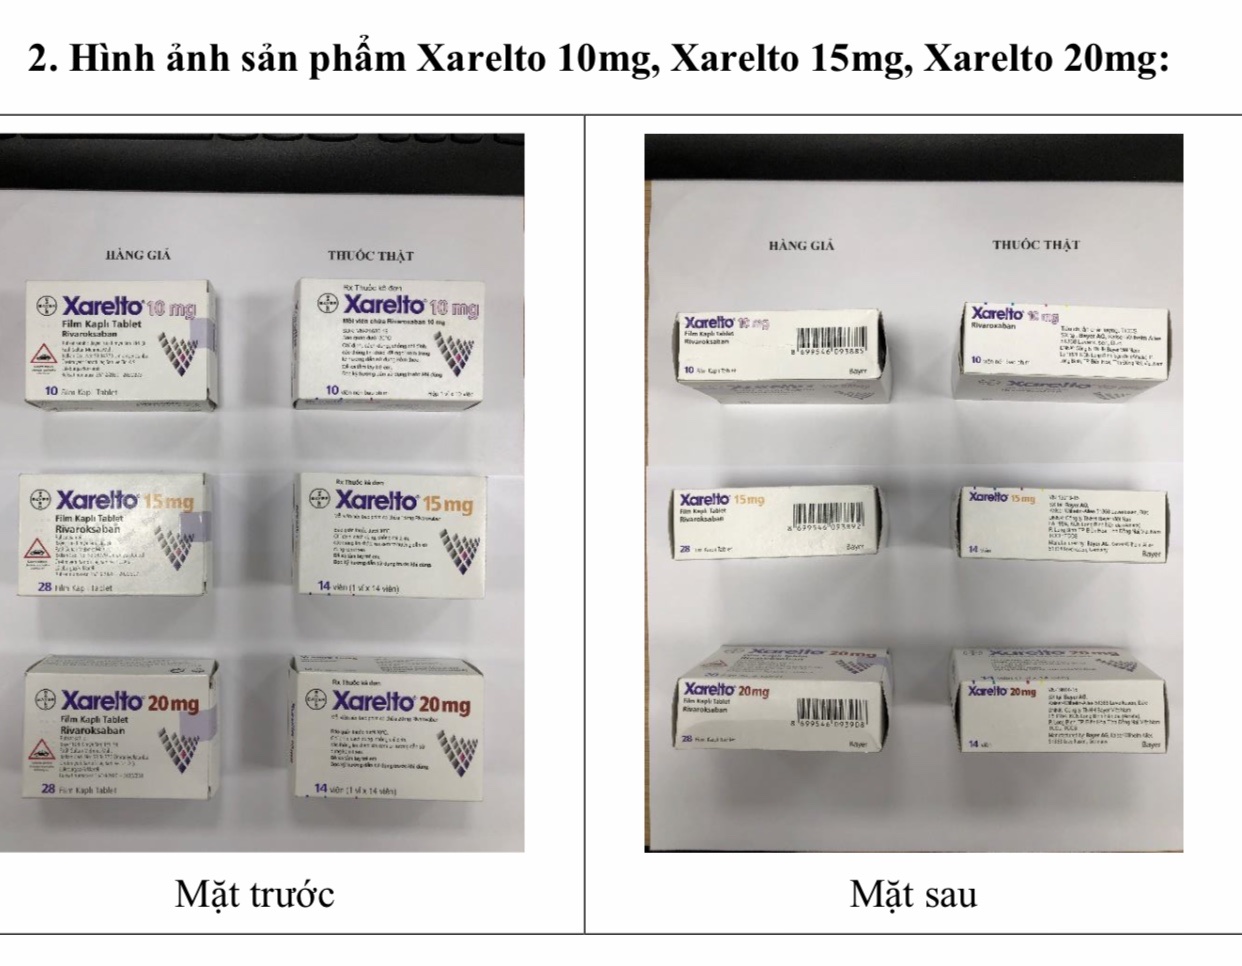 Cục Quản lý Dược: Cảnh báo phát hiện thuốc Stivarga 40mg và Xarelto 10mg/15mg/20mg nghi ngờ là thuốc giả - Ảnh 2.